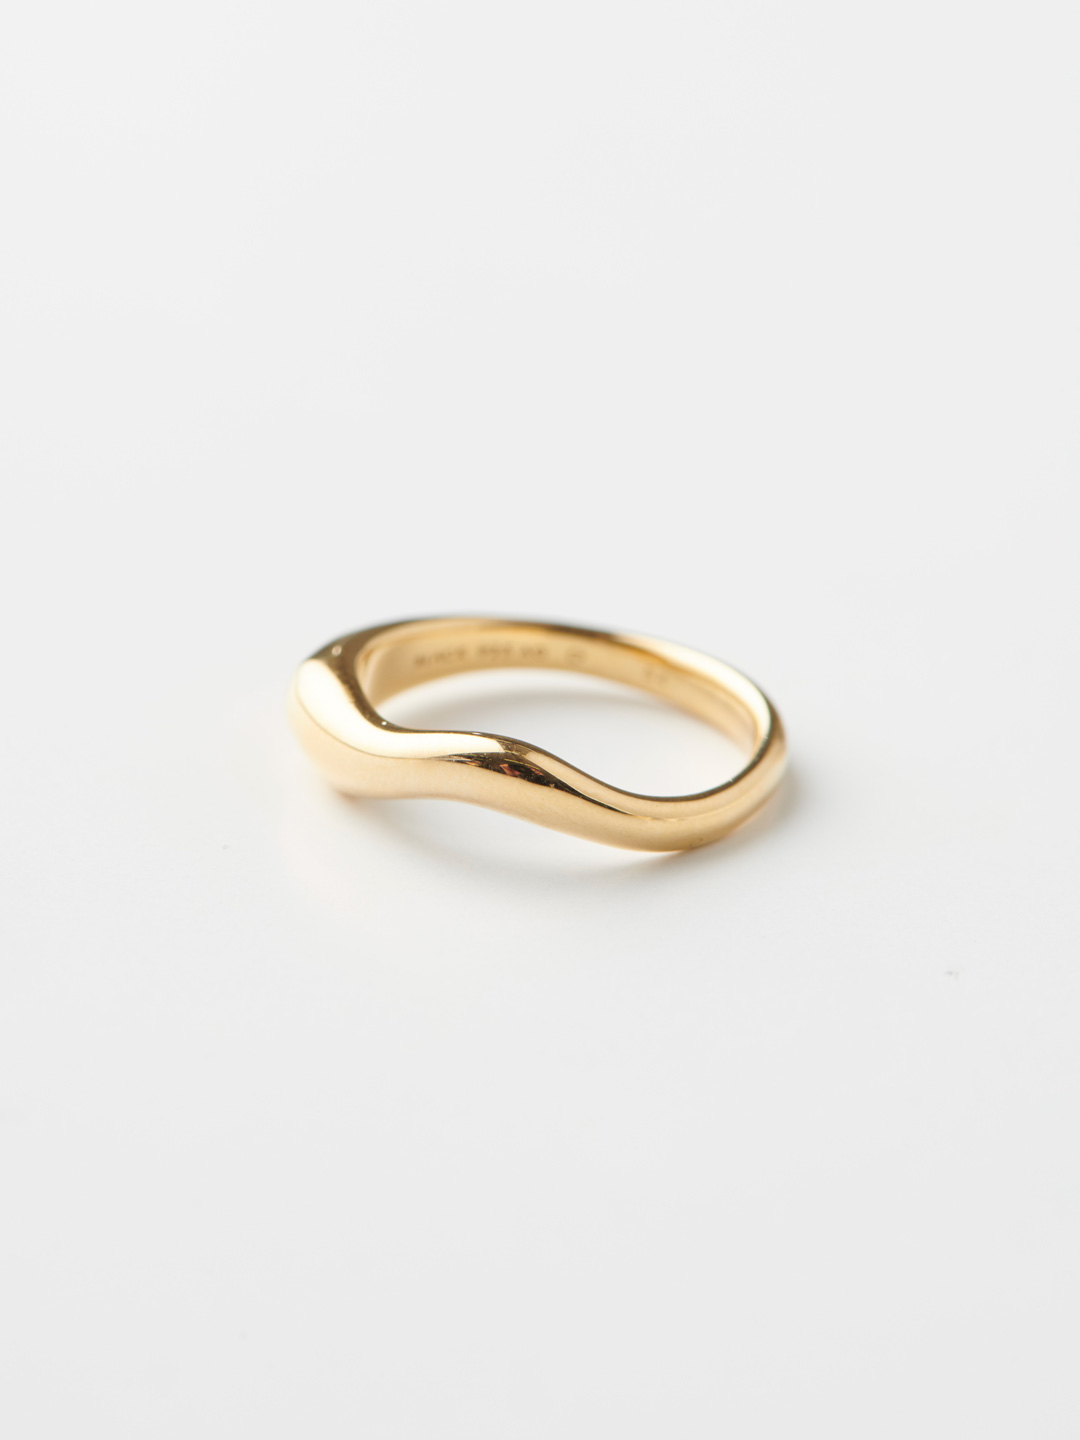 Vayu Ring  - Yellow Gold